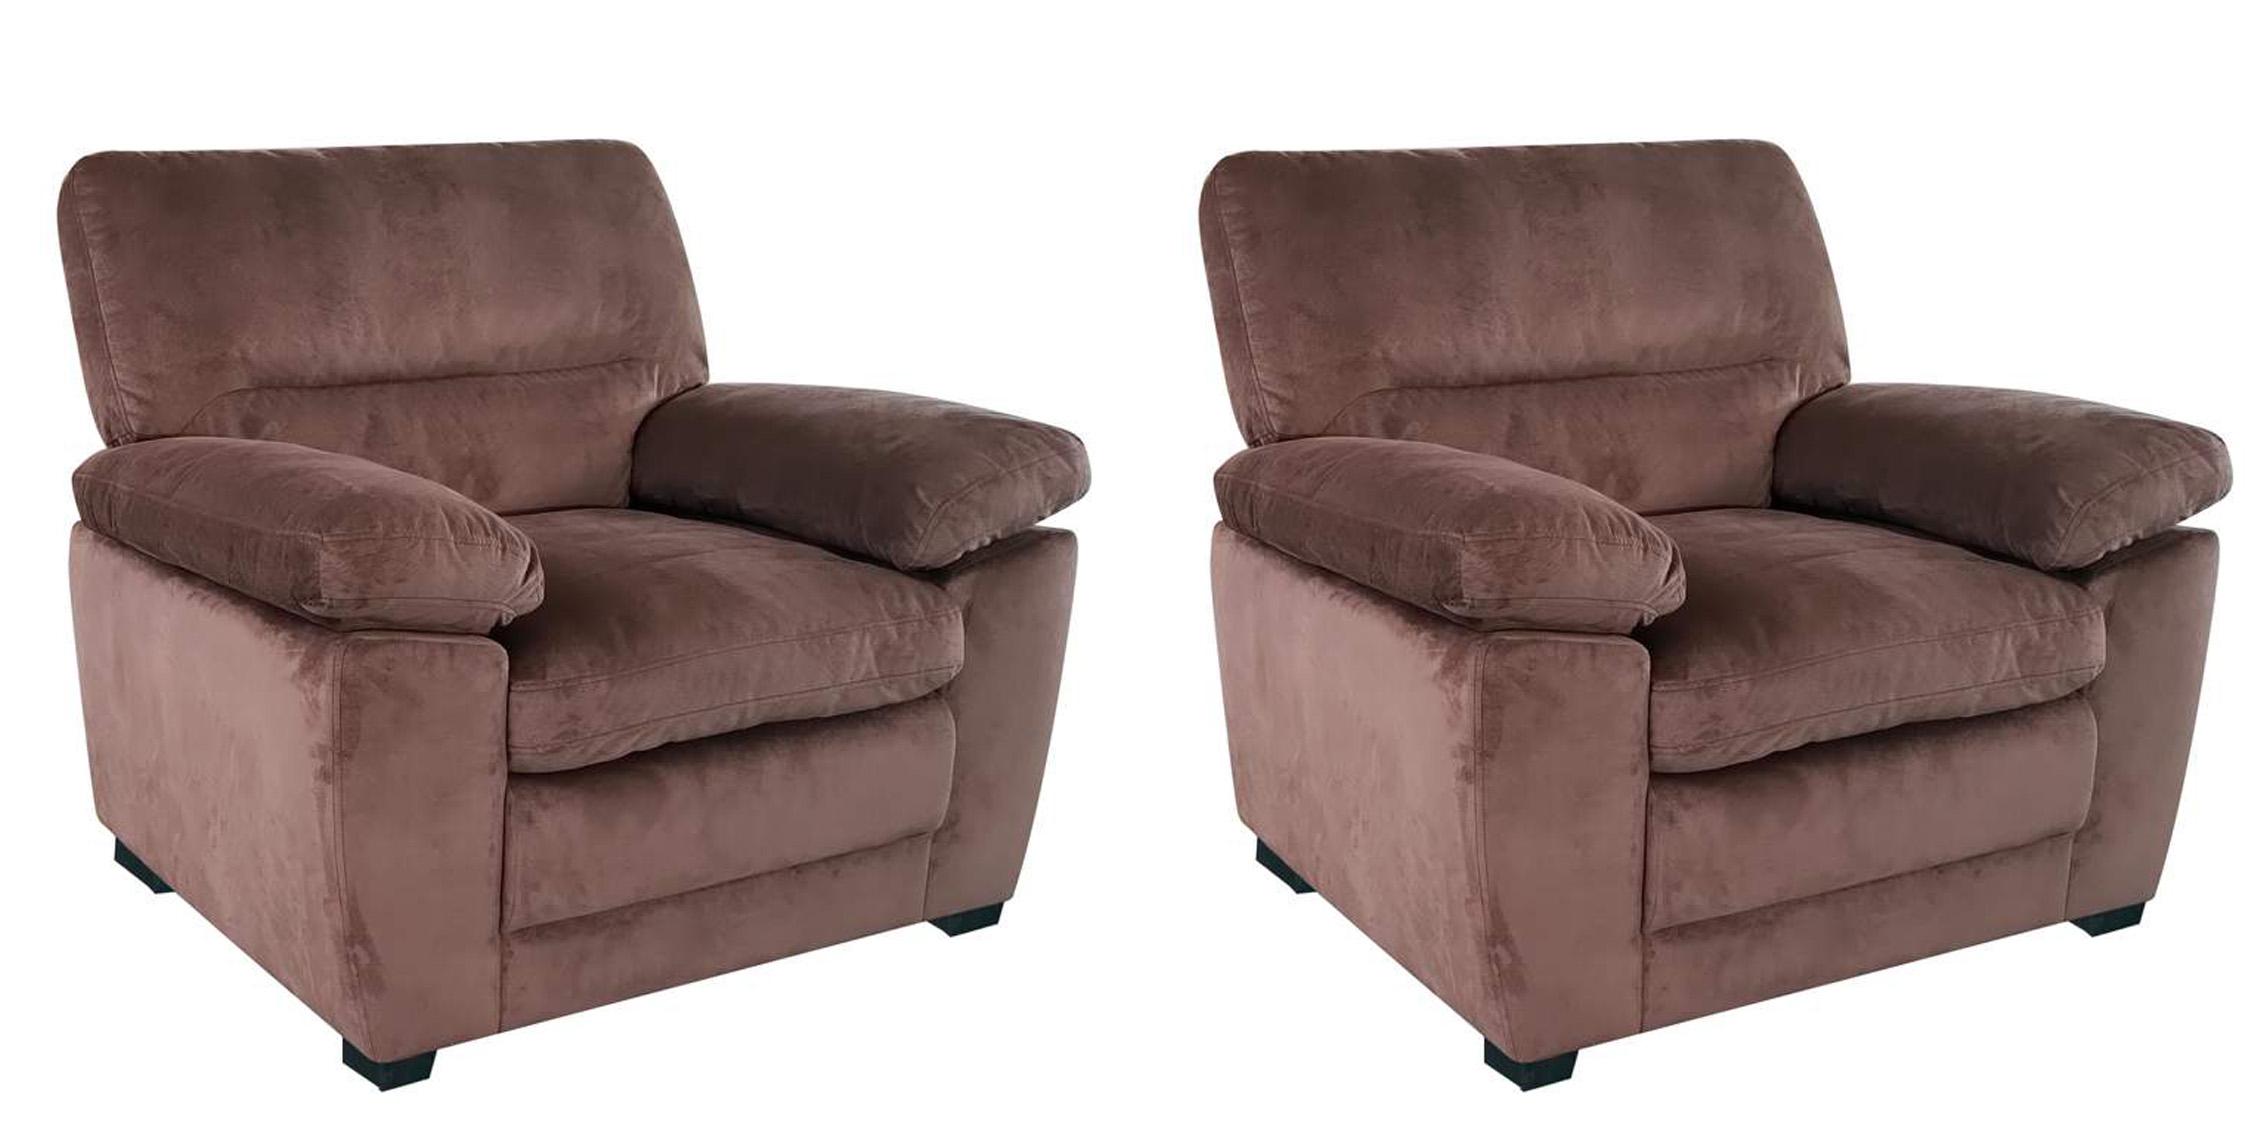 

    
Brown Fabric Arm Chair Set 2 Pcs MAXX Galaxy Home Contemporary Modern
